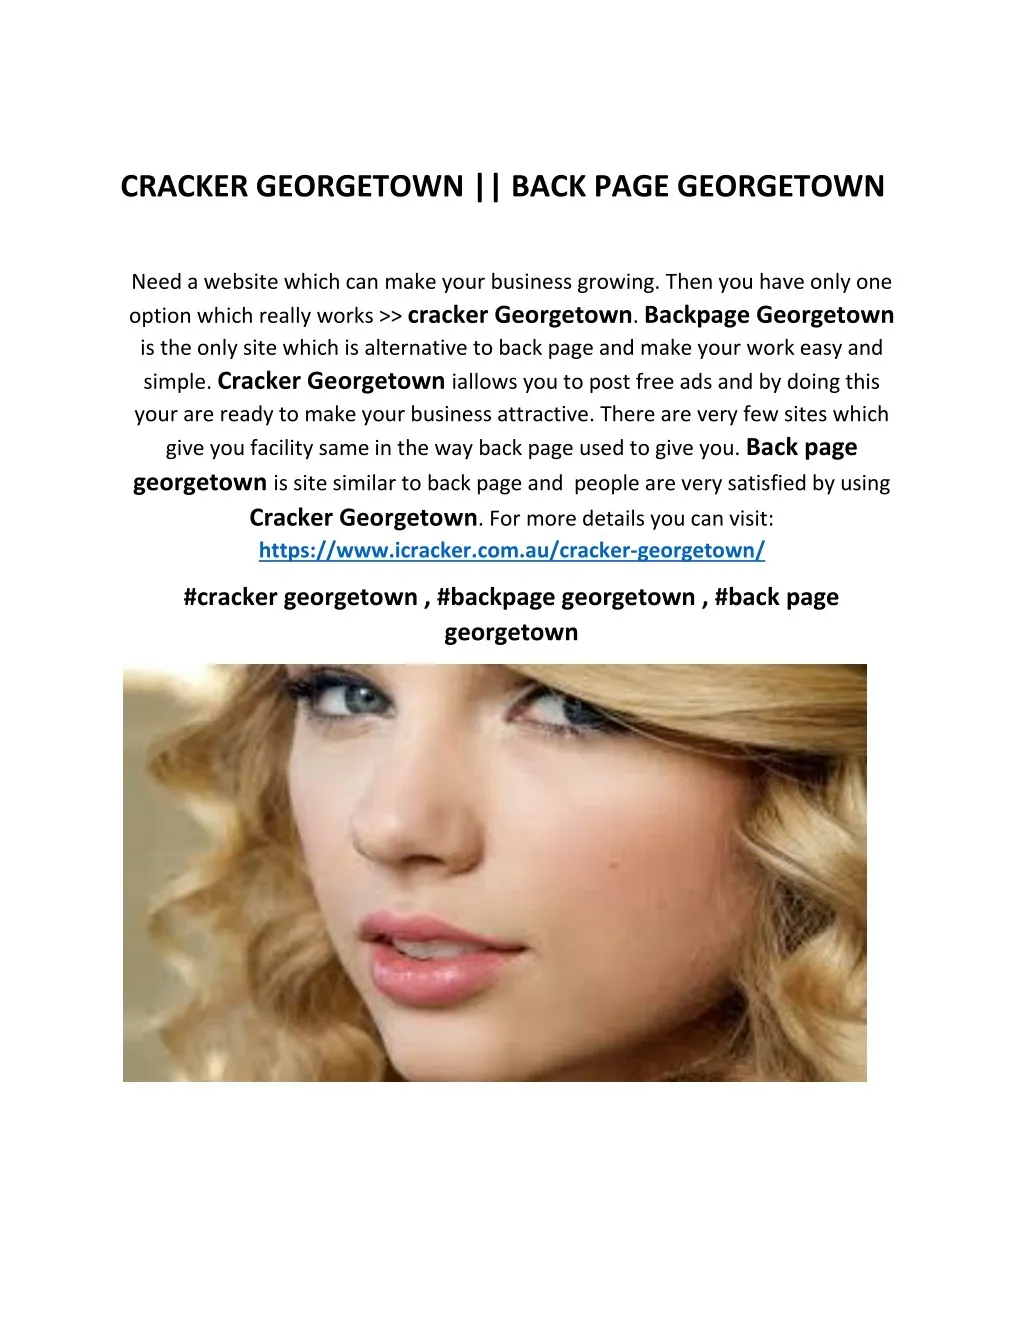 cracker georgetown back page georgetown